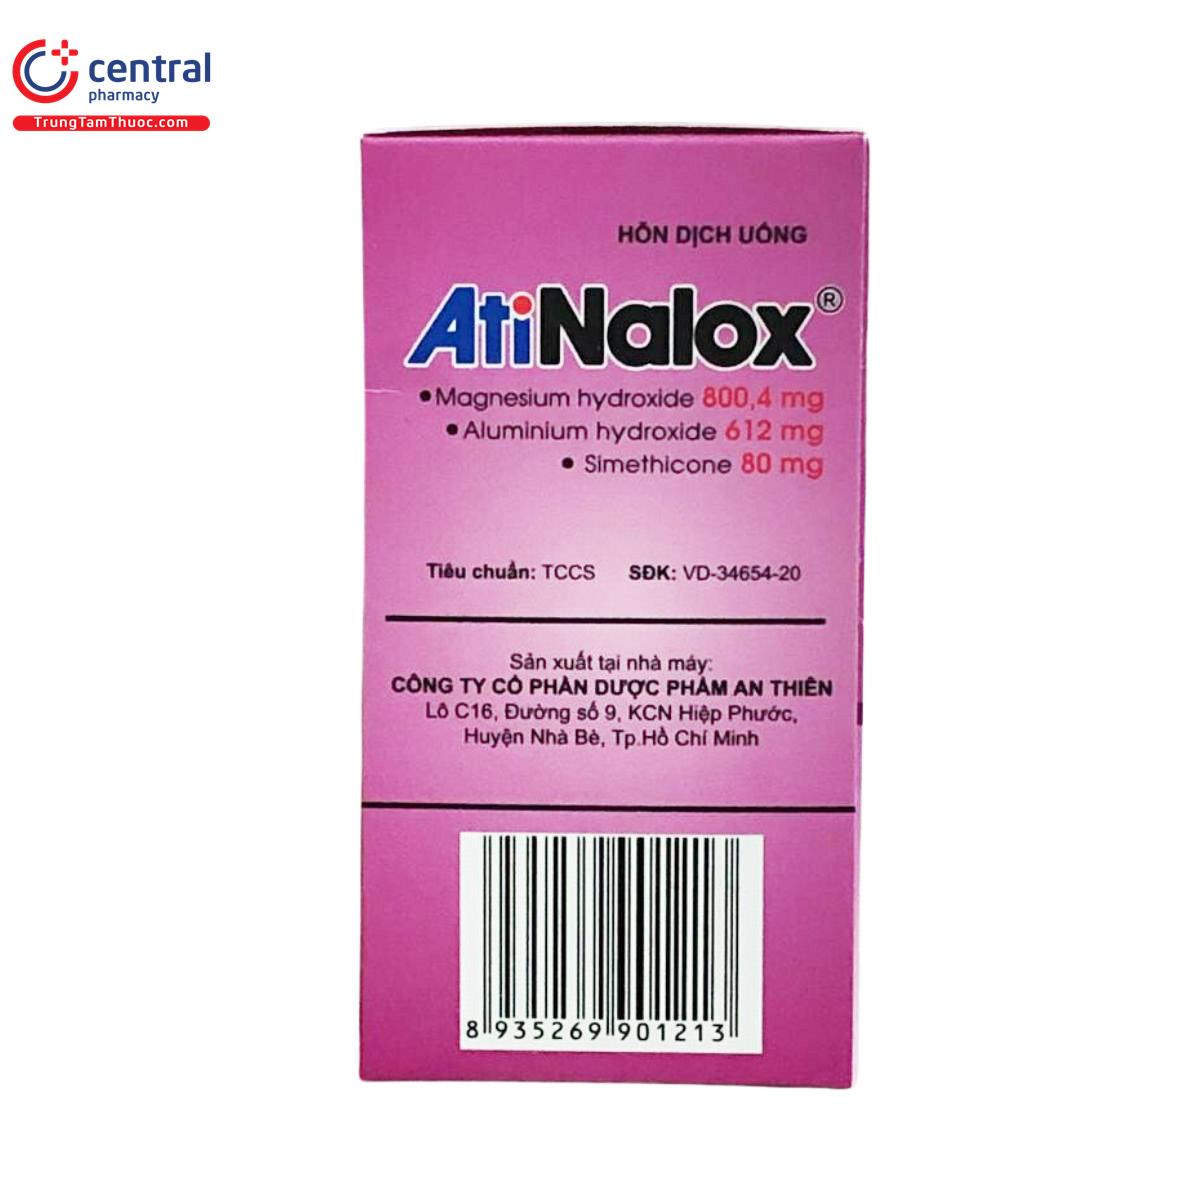 atinalox 13 C1047